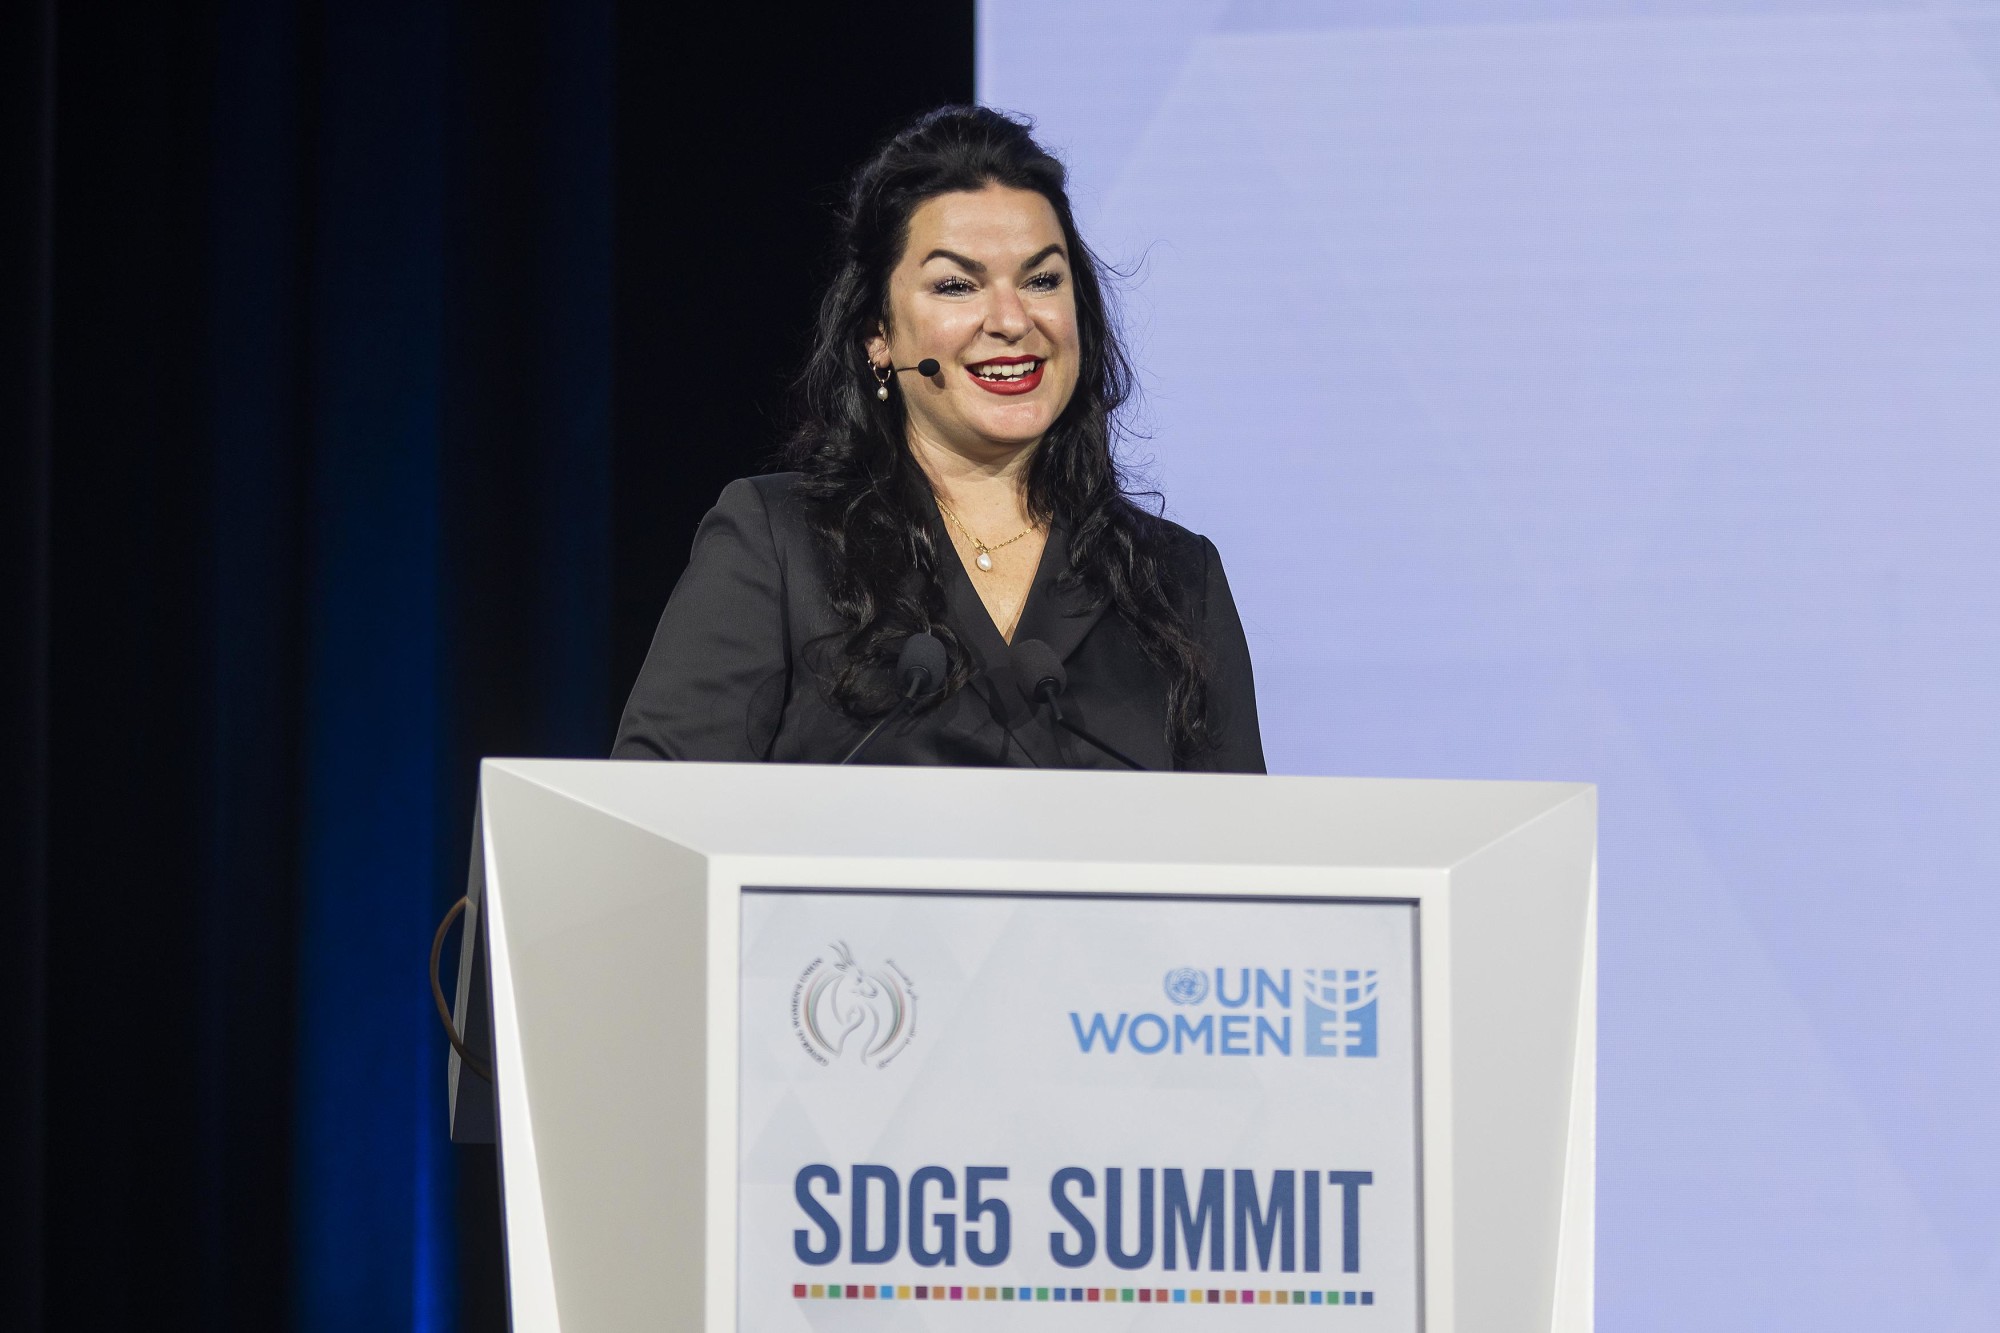 Melanie La Pointe, Entrepreneurship Coach Consultant UN Women speaks during the UN Women SDG 5 Summit at Dubai Exhibition Centre m60782